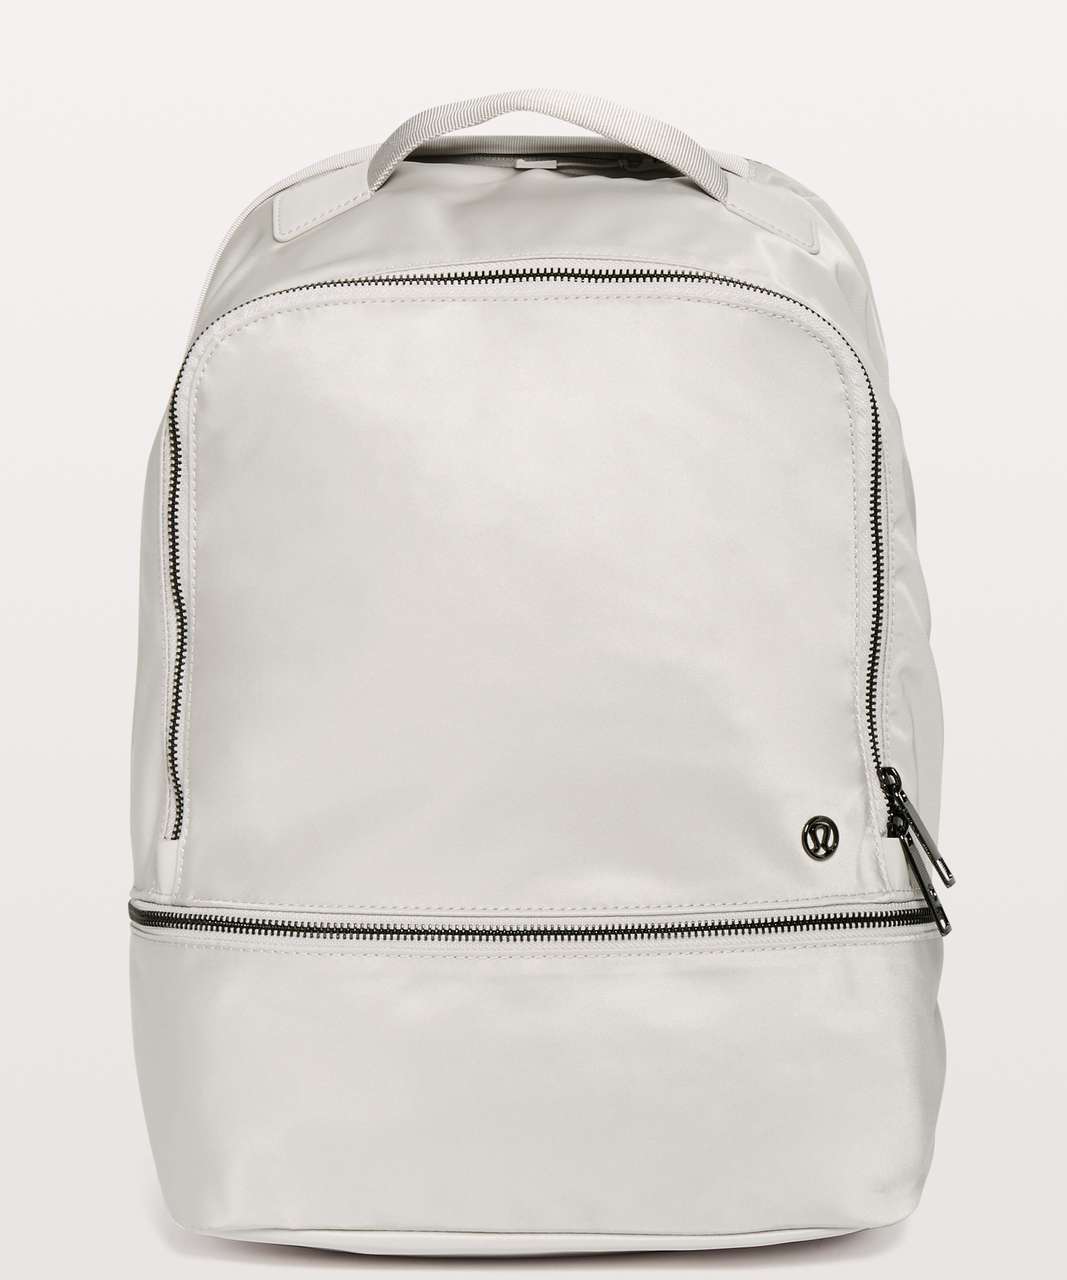 Lululemon City Adventurer Backpack *17L - Chrome